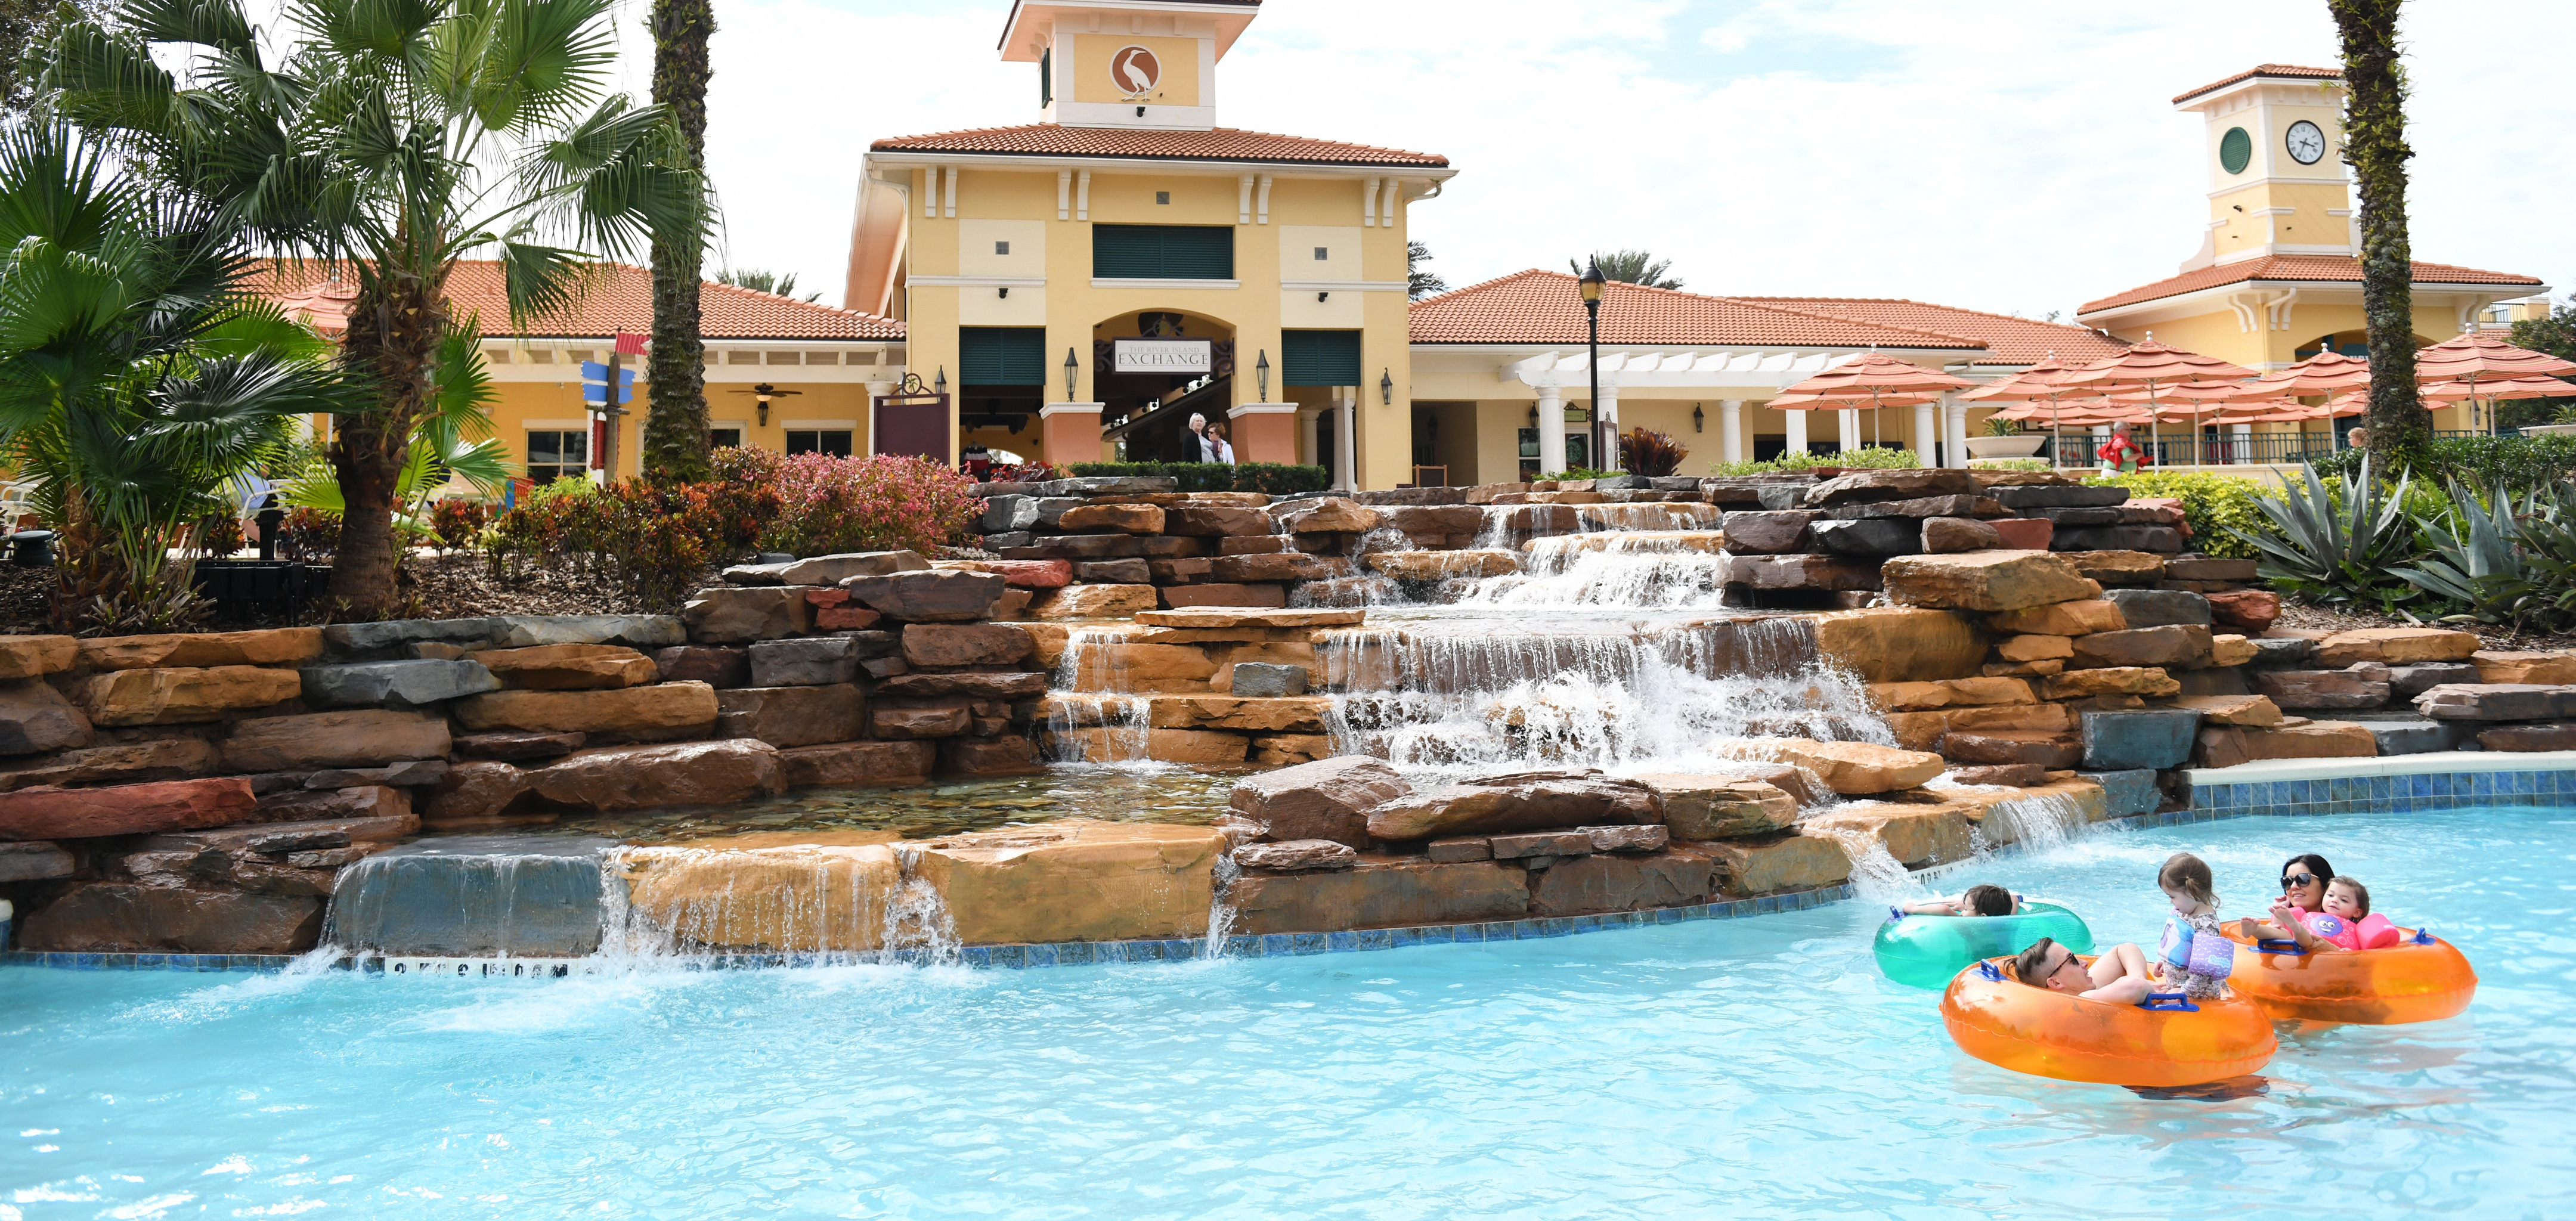 Orange Lake Resort tại Orlando là một khu nghỉ dưỡng tuyệt vời cho kì nghỉ của bạn cùng gia đình và bạn bè. Hãy tham quan trang web chính thức của khu nghỉ dưỡng, HolidayInnClub.com để tìm hiểu thêm về nơi nghỉ dưỡng đầy màu sắc này và hình ảnh liên quan đến nó.